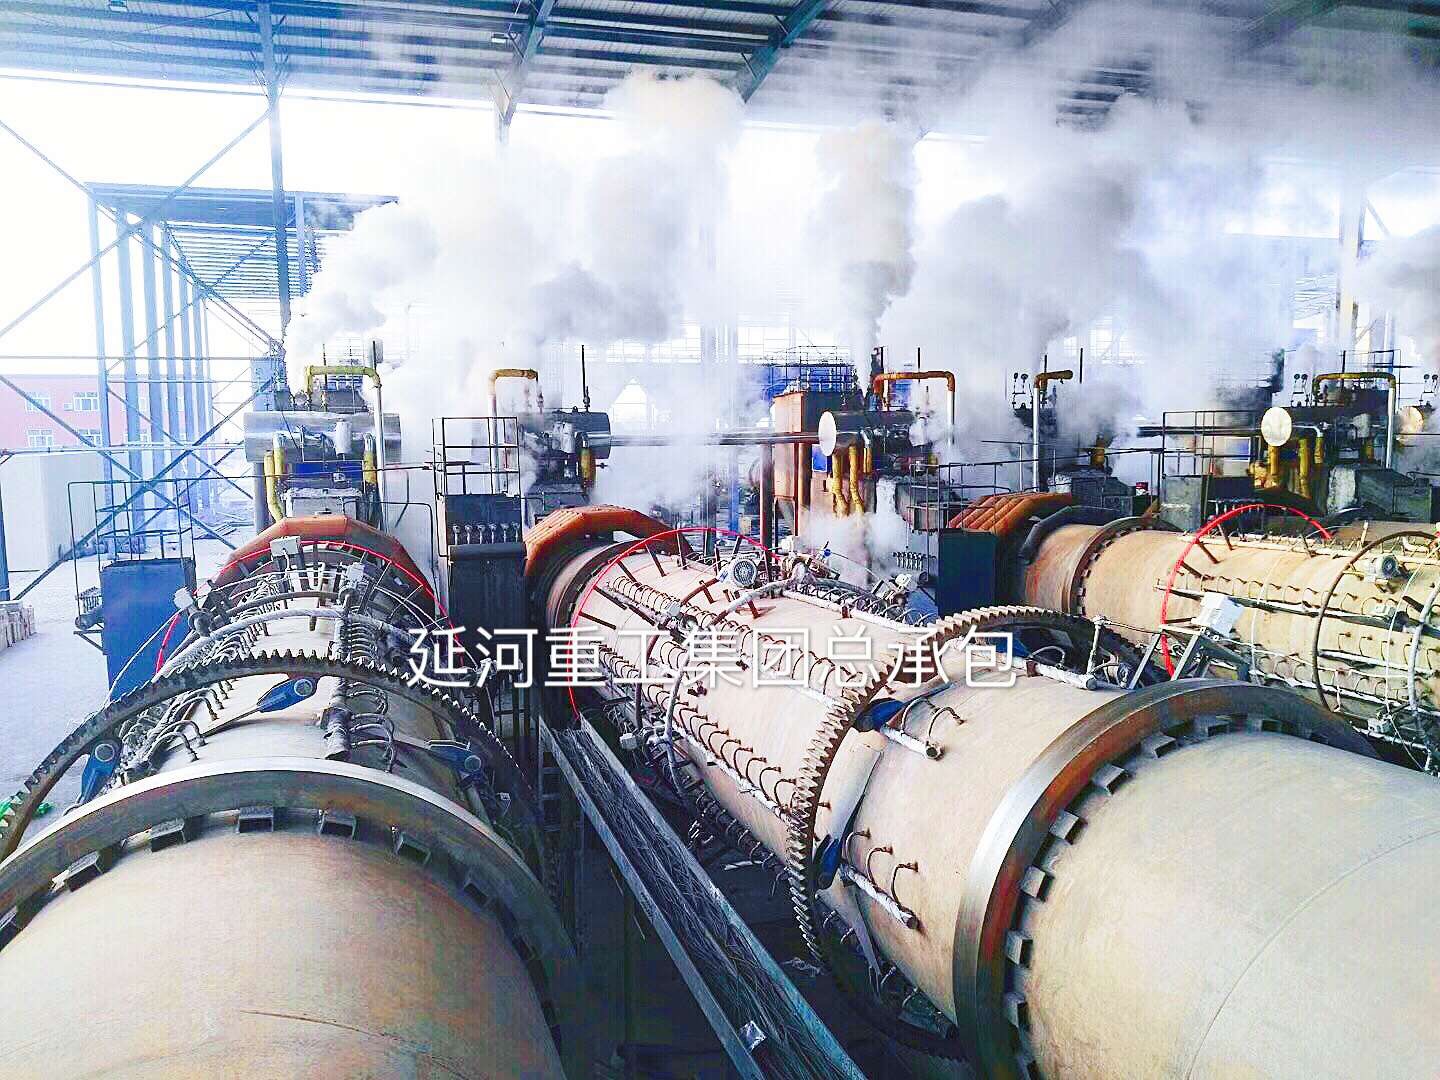 柱状炭生产设备、陕西延河 在线咨询 、回转炭化炉设备供应商